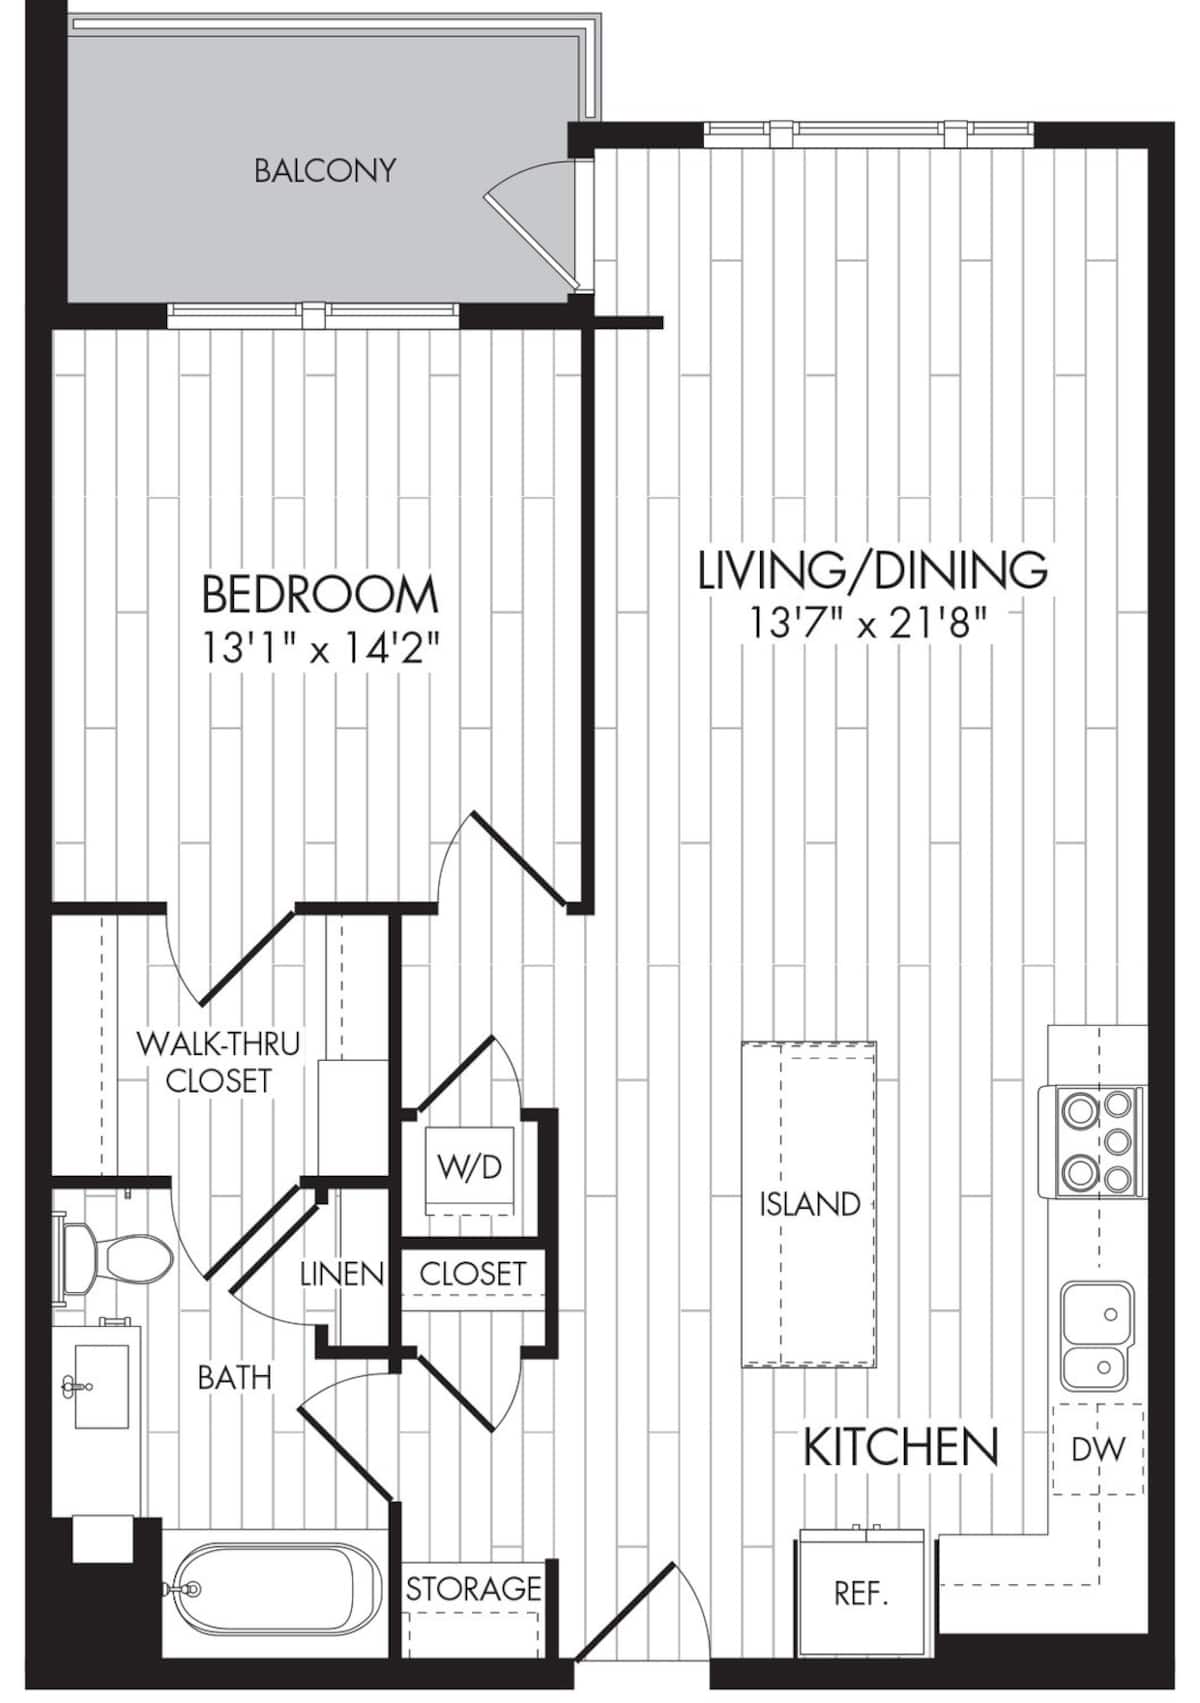 Floorplan diagram for 1P, showing 1 bedroom